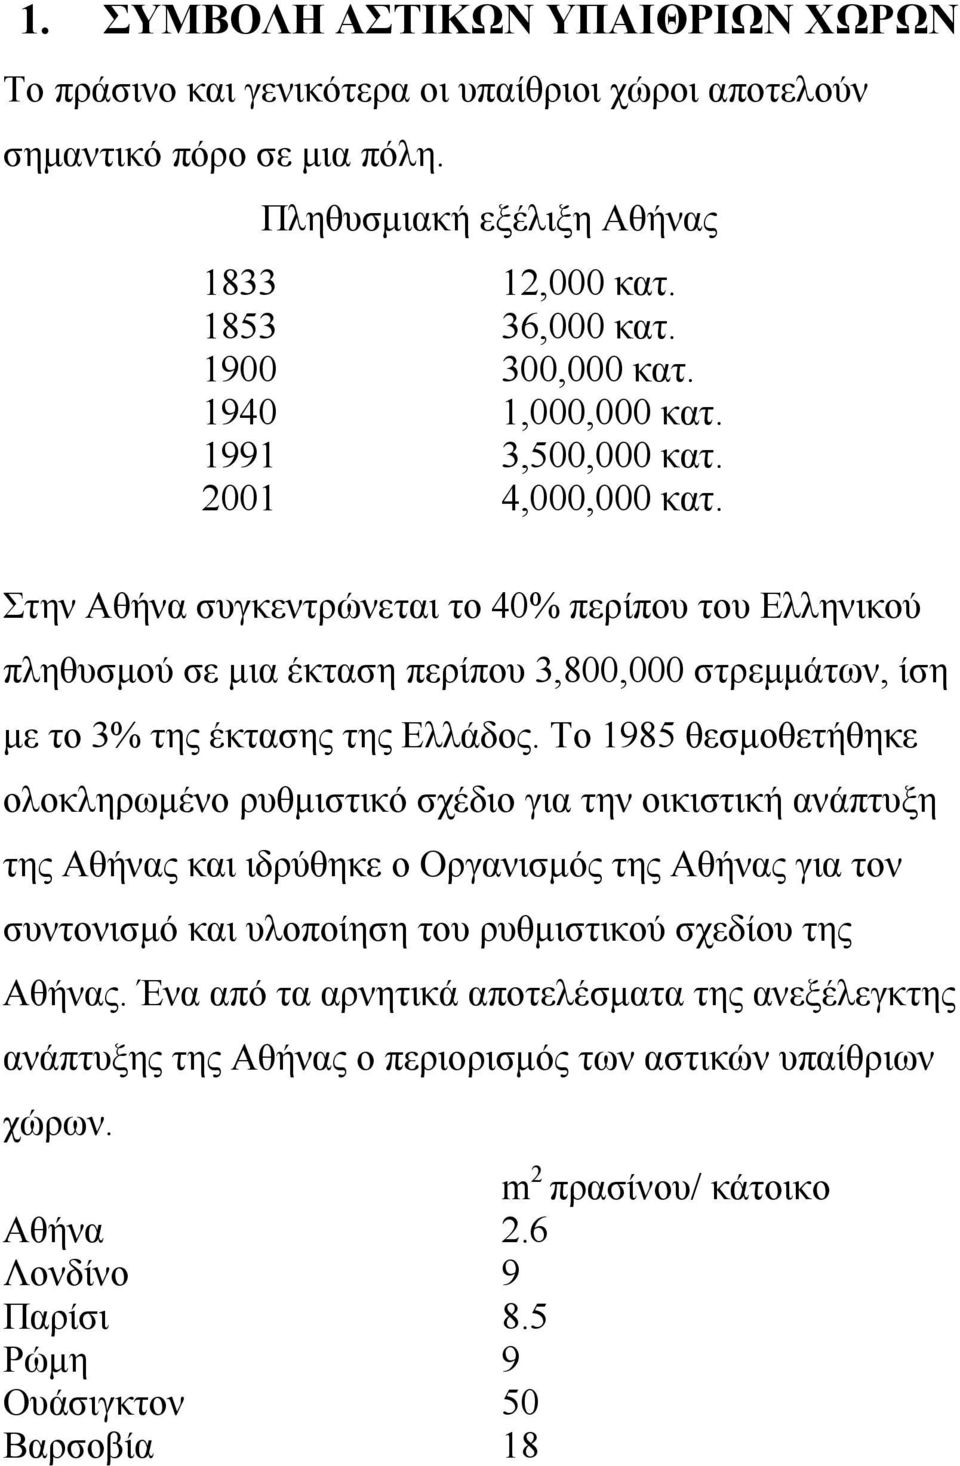 Στην Αθήνα συγκεντρώνεται το 40% περίπου του Ελληνικού πληθυσμού σε μια έκταση περίπου 3,800,000 στρεμμάτων, ίση με το 3% της έκτασης της Ελλάδος.